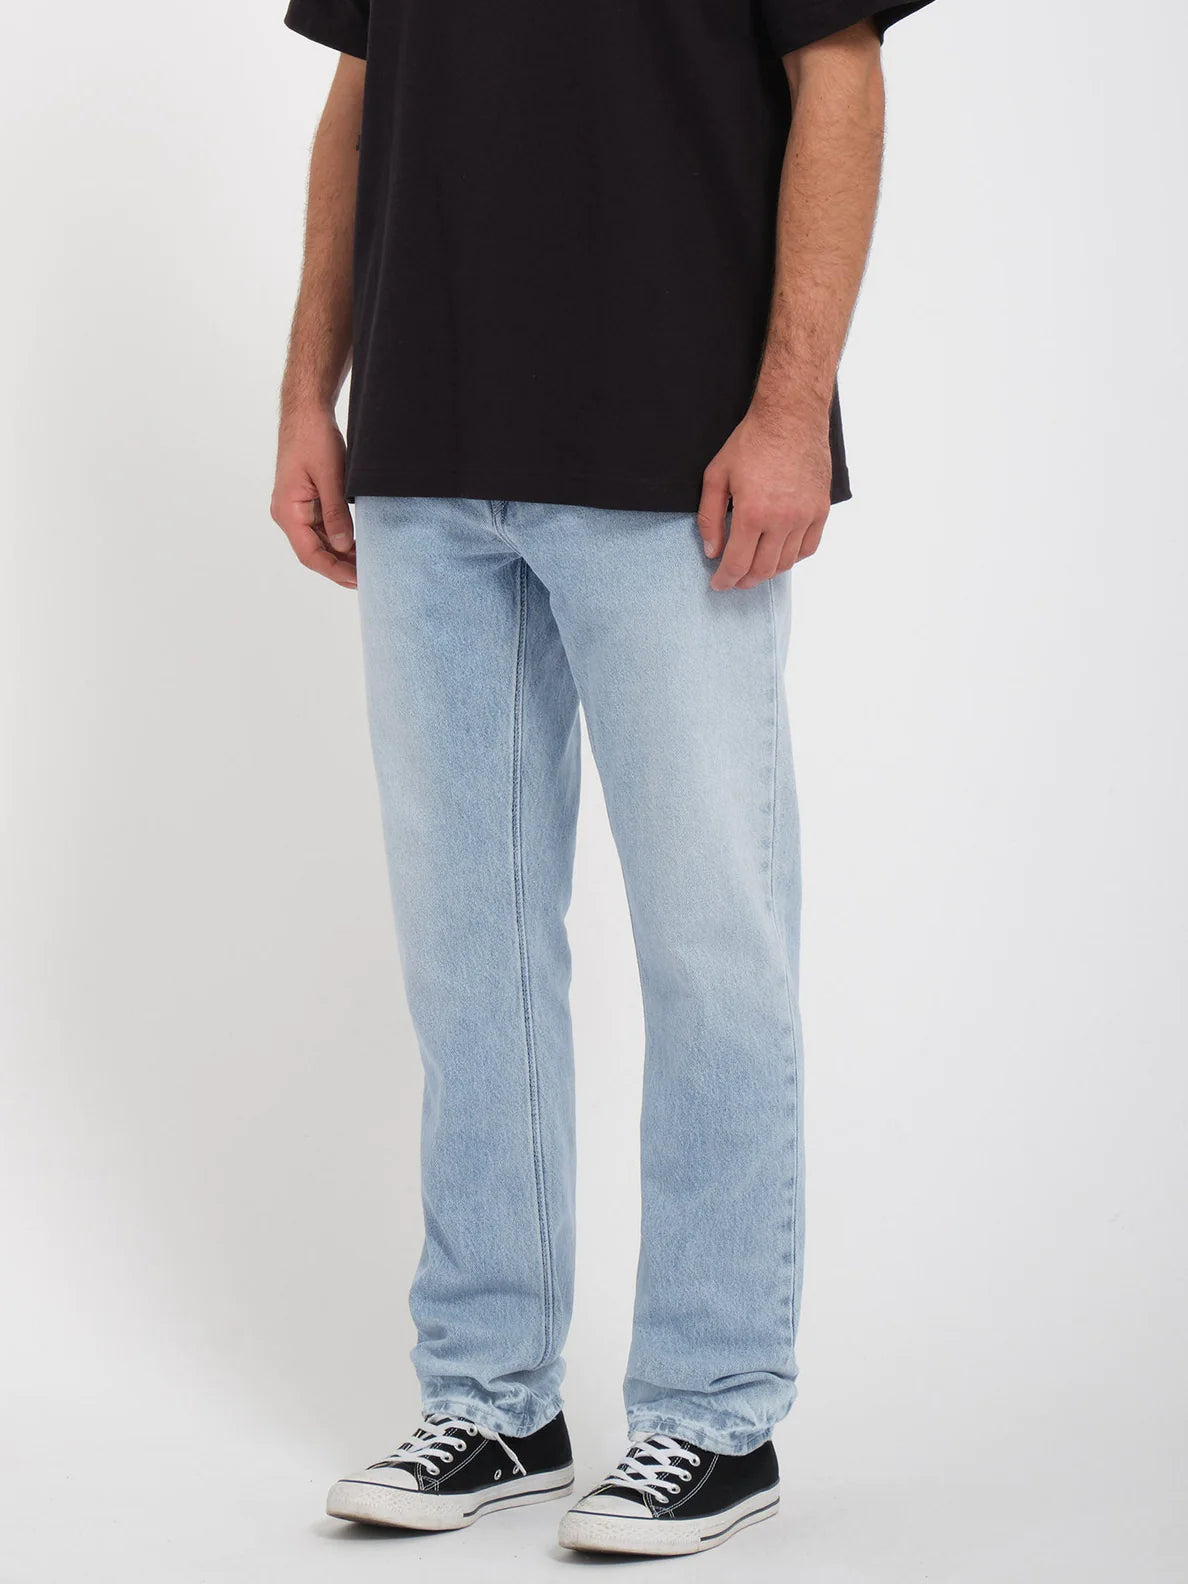 Volcom Vorta Jeans - Sandy Indigo | Boutique Volcom | Collection_Zalando | Nouveaux produits | Pantalon jean | Produits les plus récents | Produits les plus vendus | Tous les pantalons pour hommes | surfdevils.com